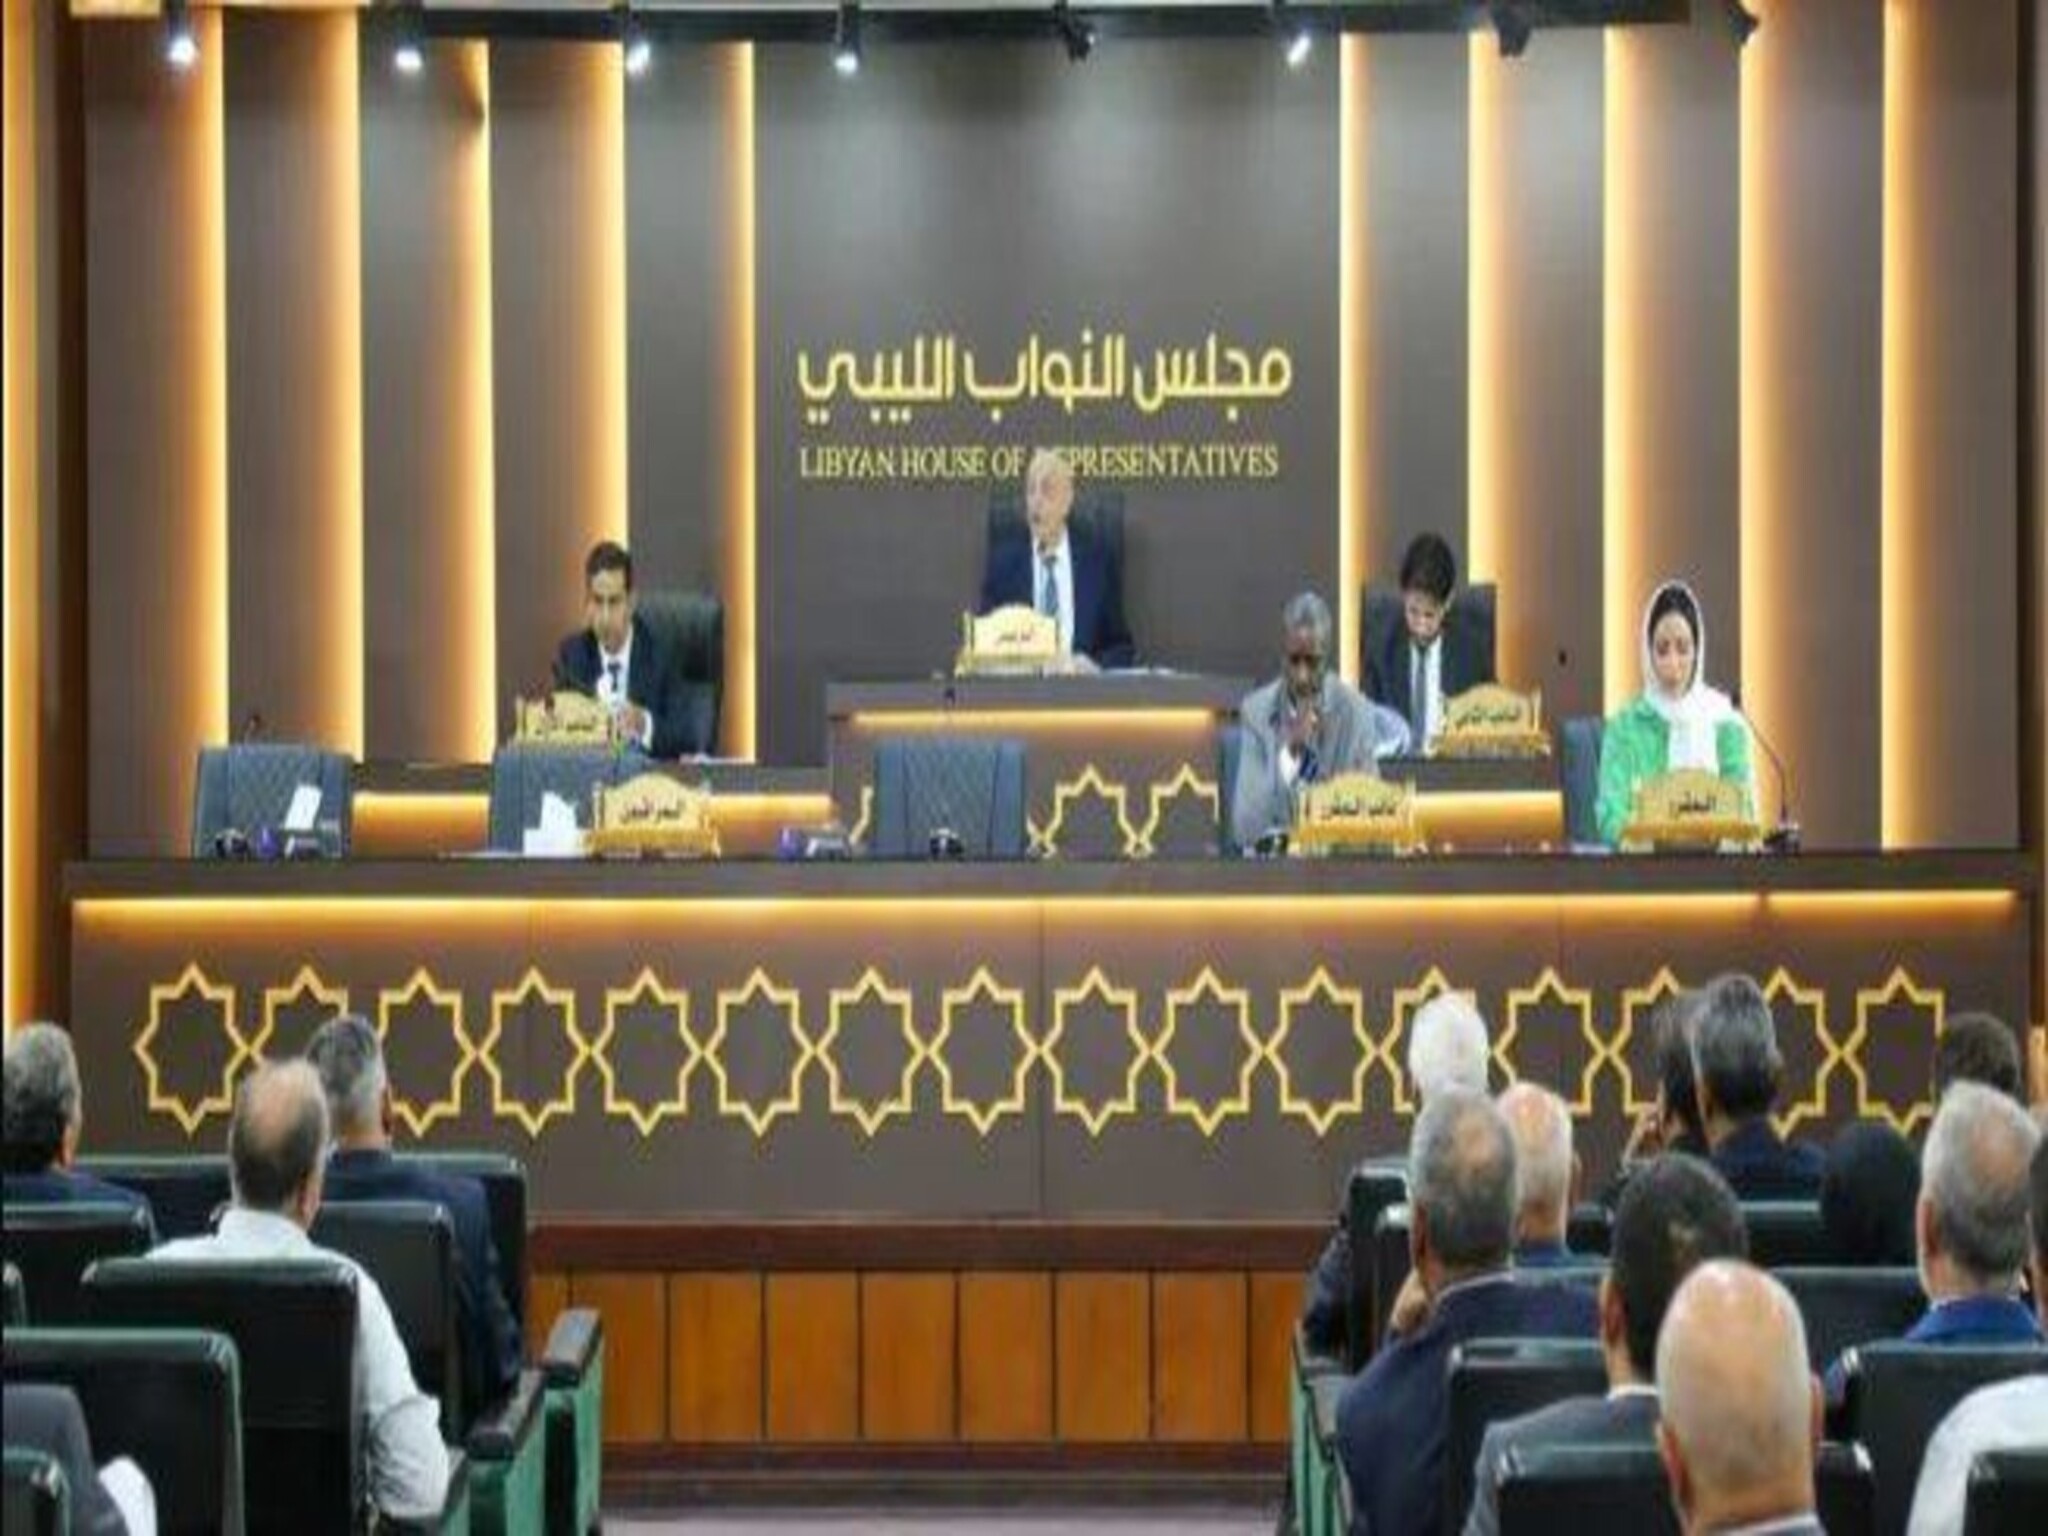  رئيس المجلس الأعلى للدولة الليبية...يعلن أقتراب إجراءات الانتخابات الرئاسية